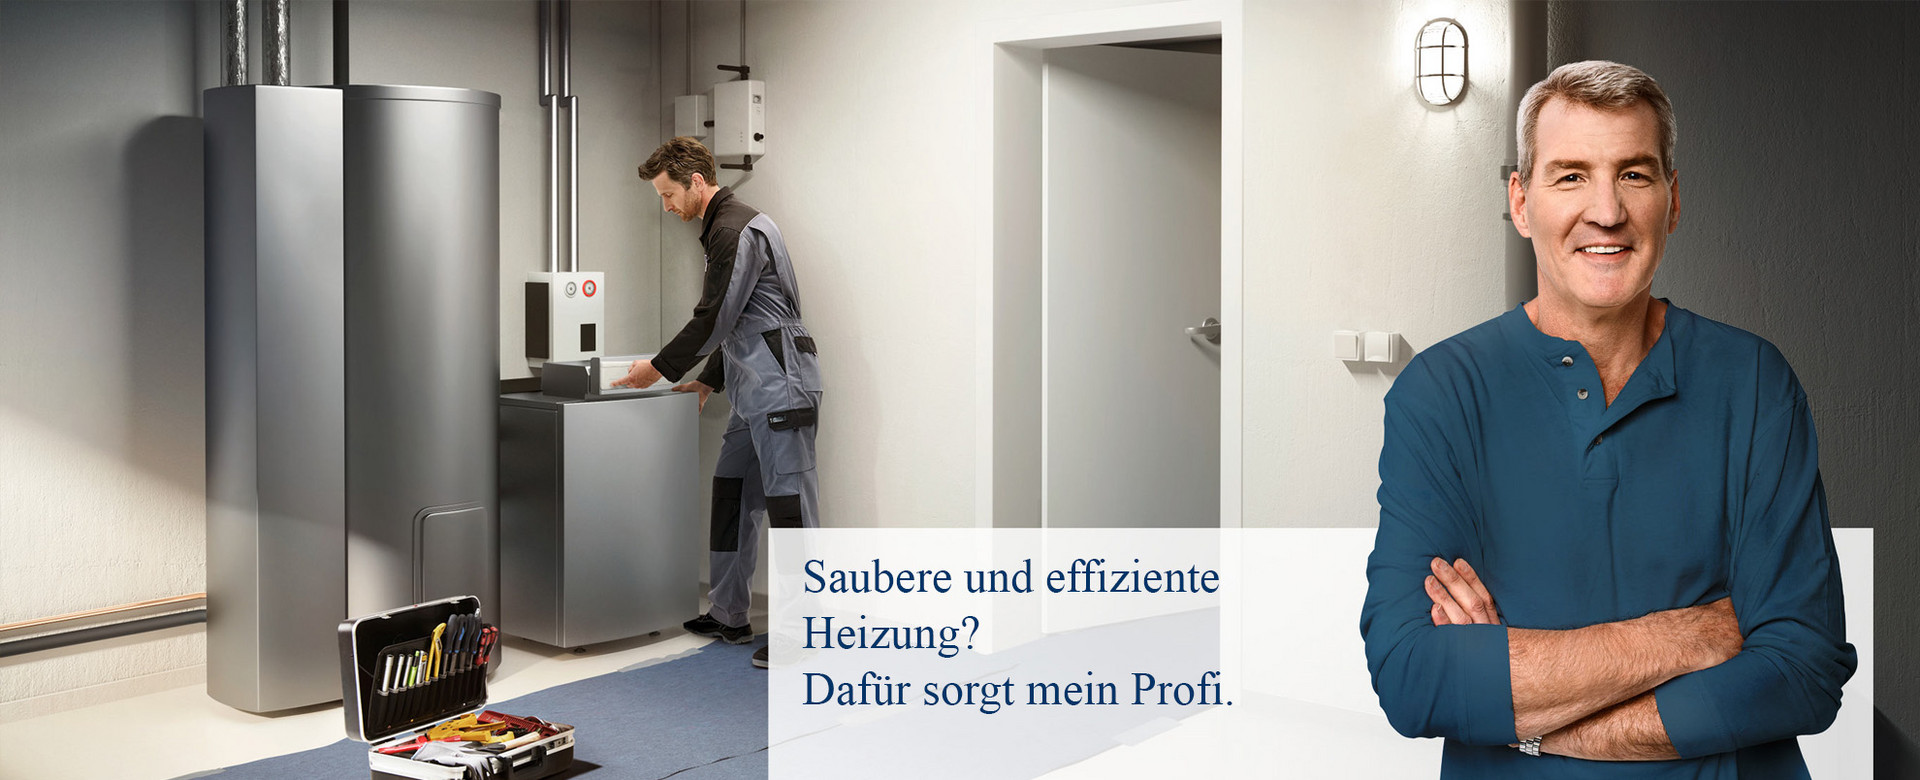 Schacht & Brederlow GmbH